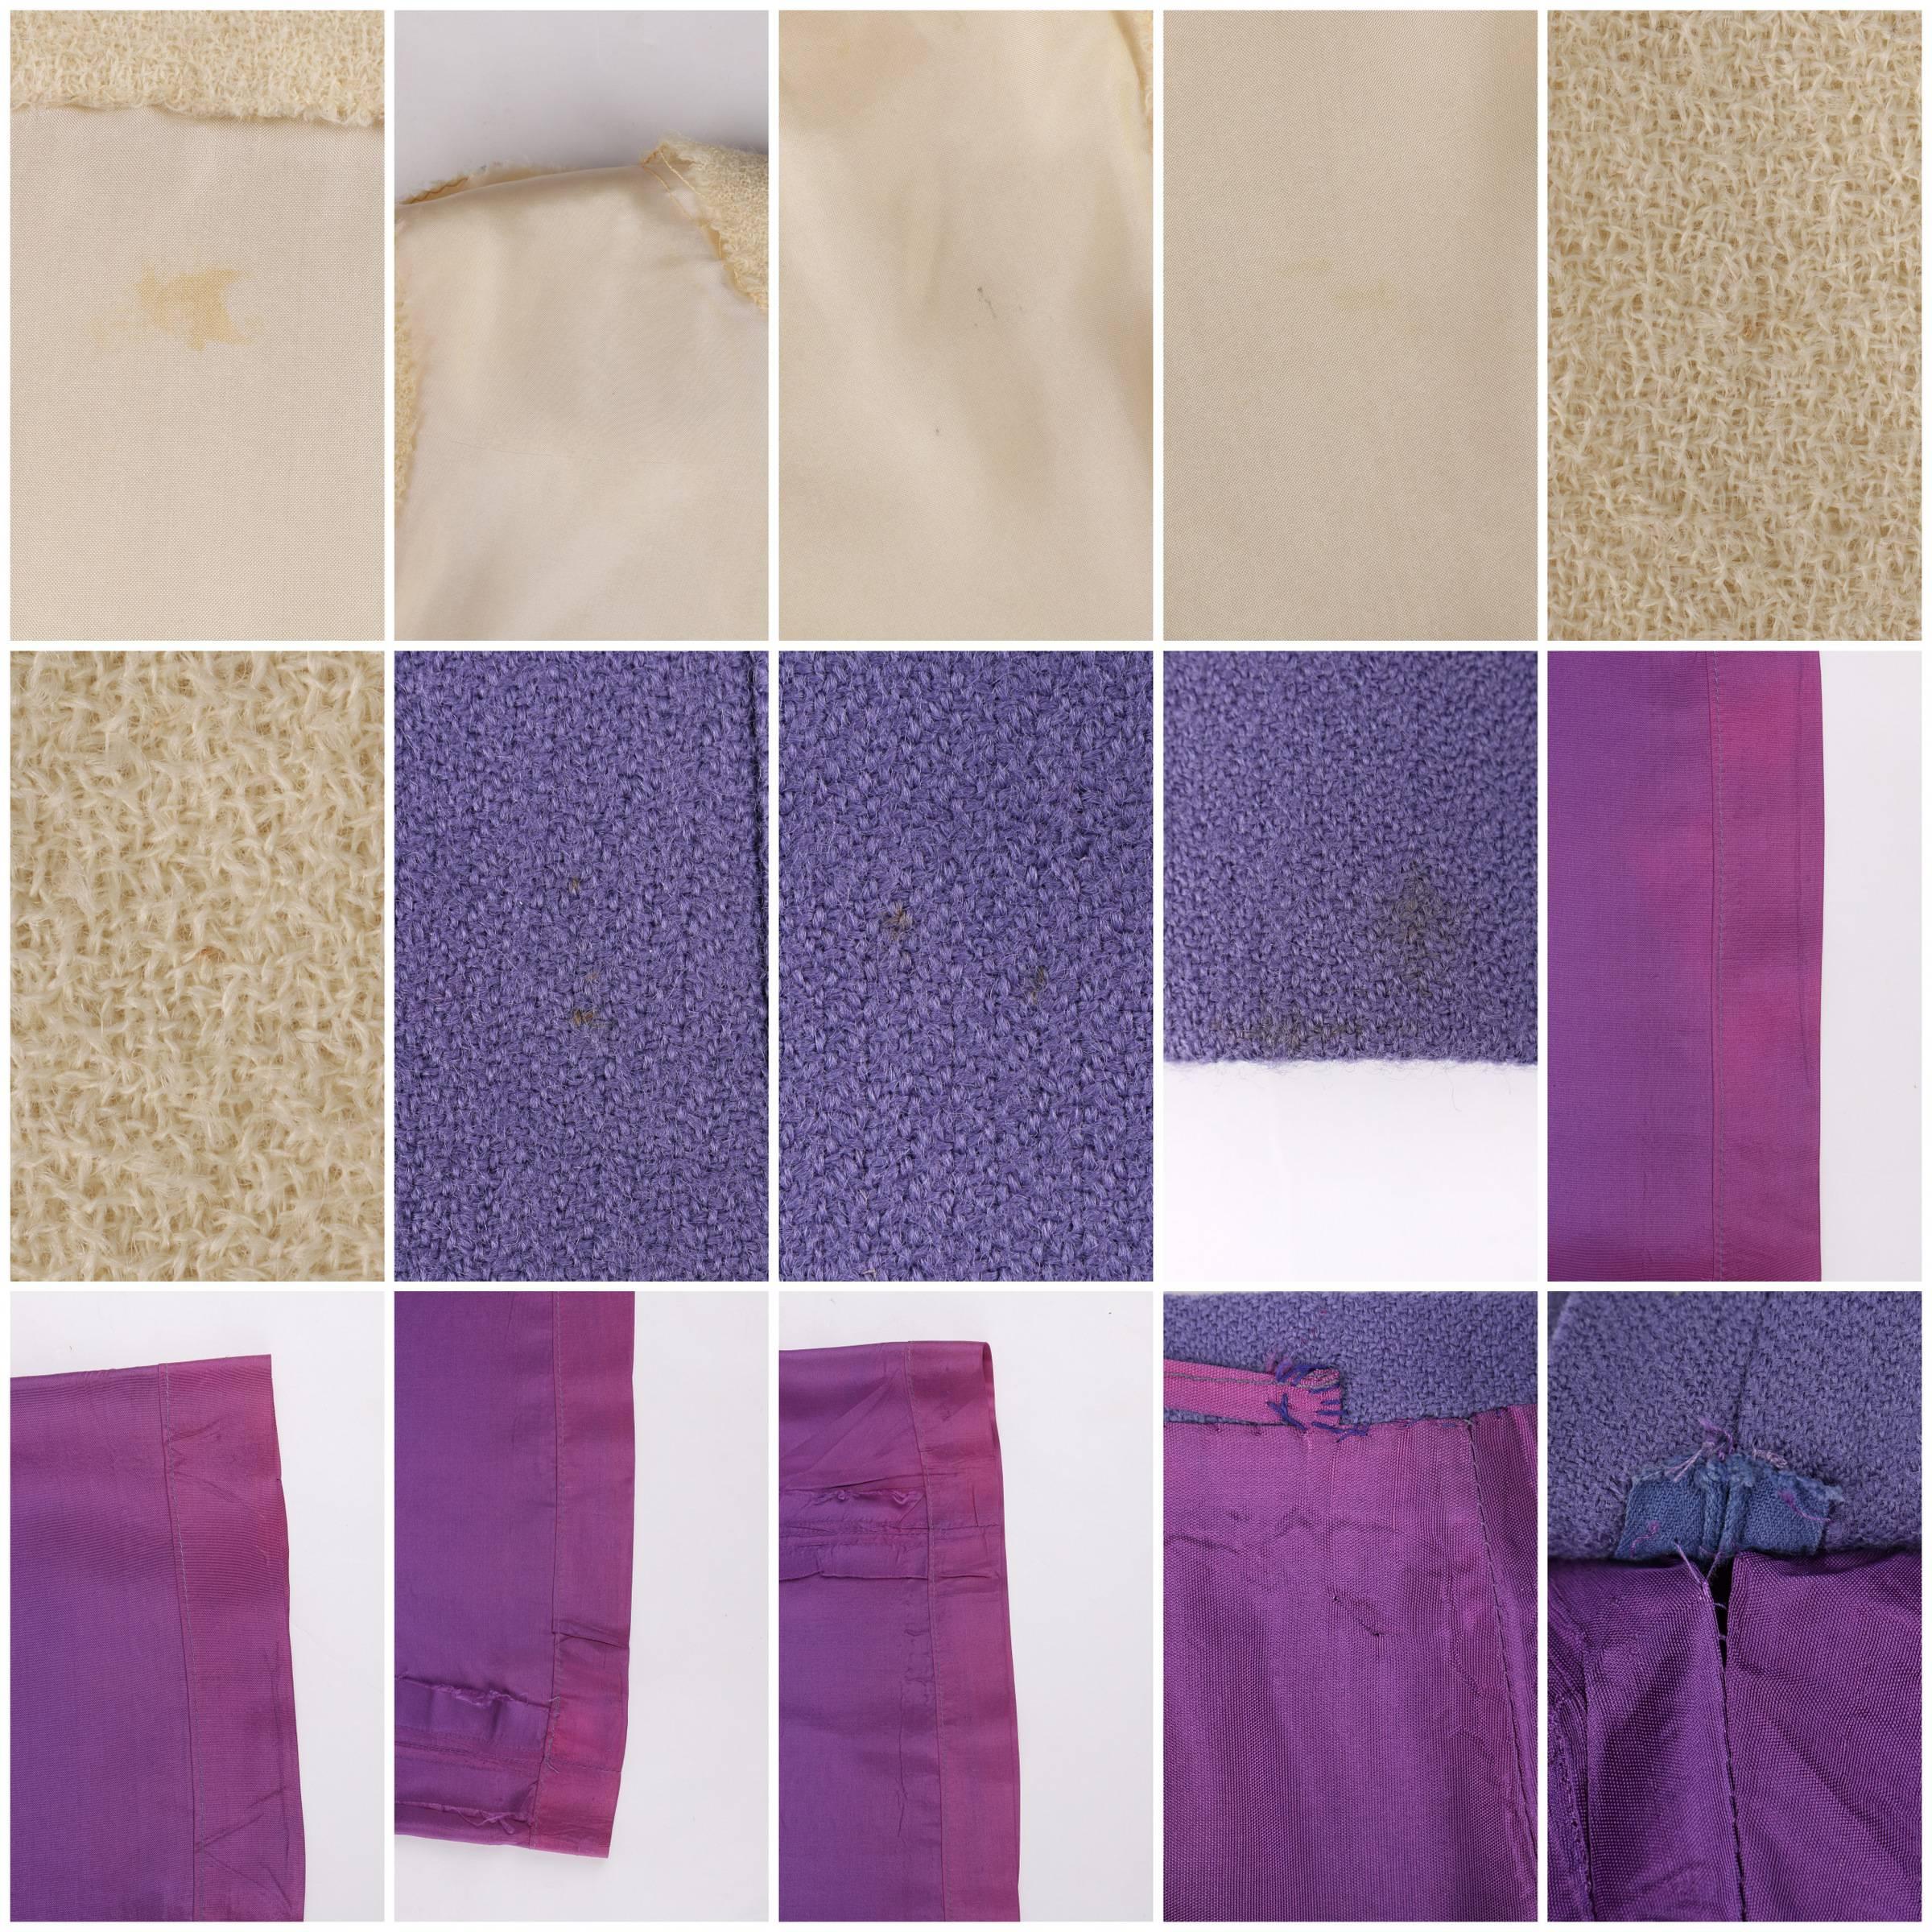 JEANNE LANVIN c.1960's 3 Piece Purple & Ivory Wool Blazer Tank Top Skirt Suit 3